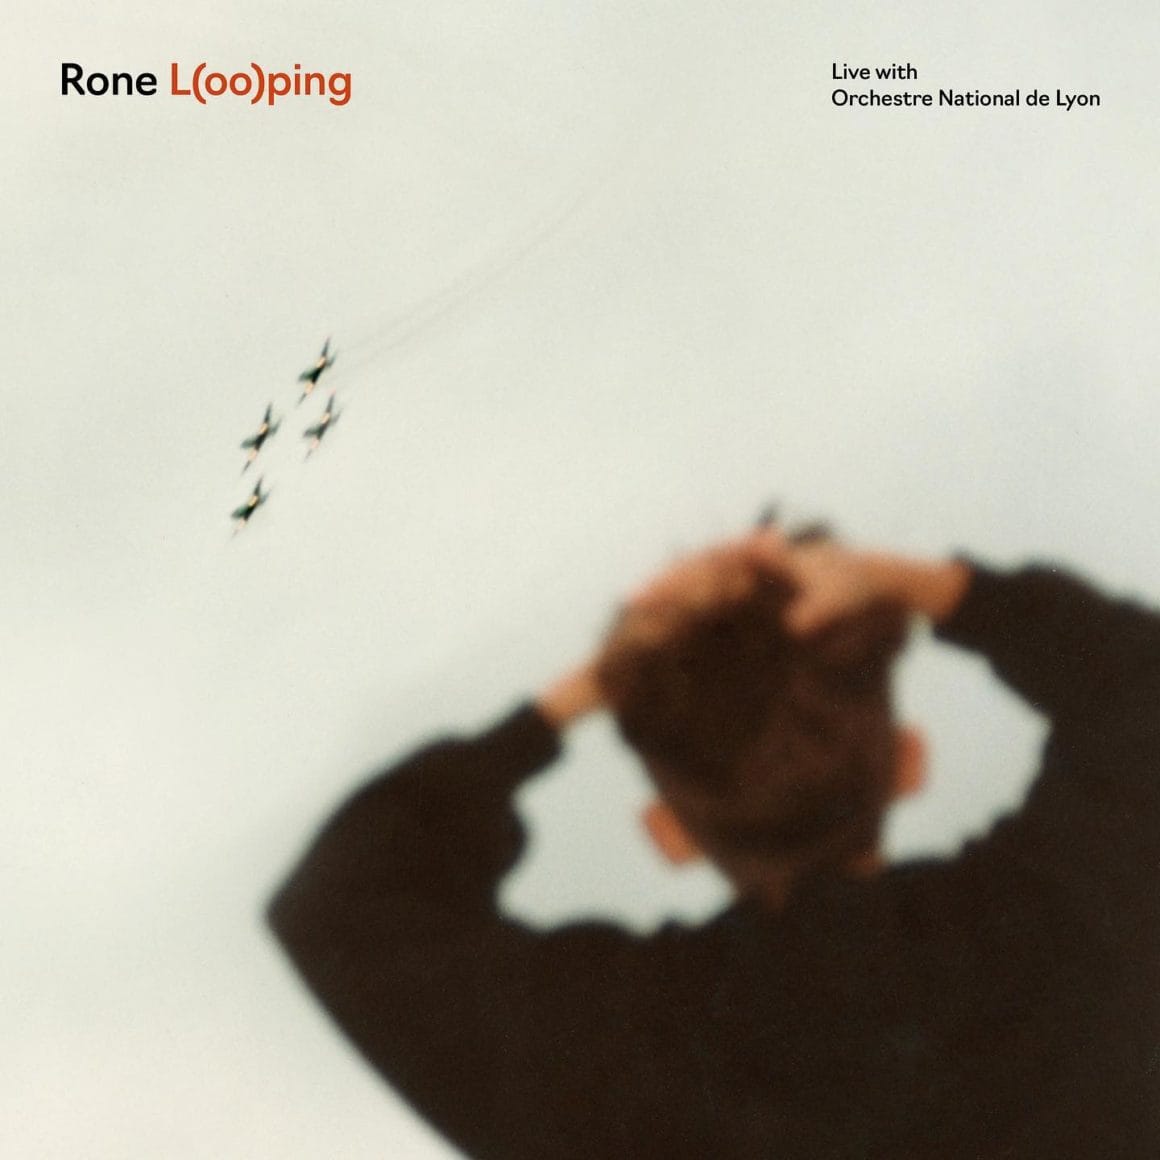 Cover de l'album L(oo)ping, un homme regardant des oiseaux voler Bora Vocal